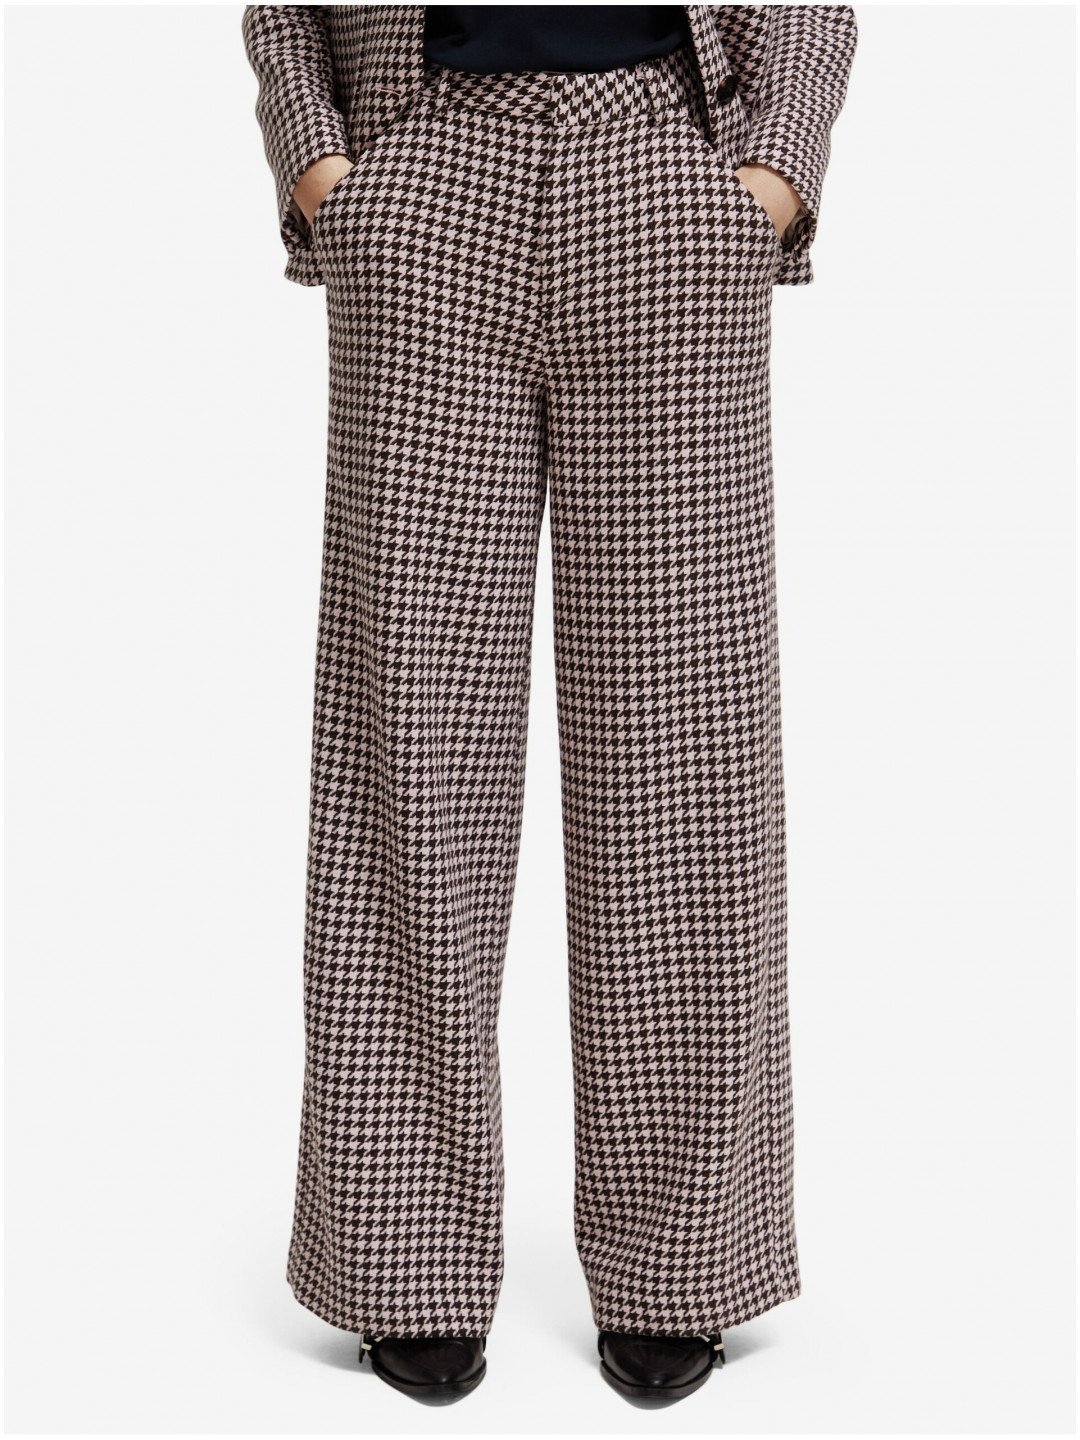 Béžové dámské vzorované kalhoty s příměsí vlny Scotch & Soda